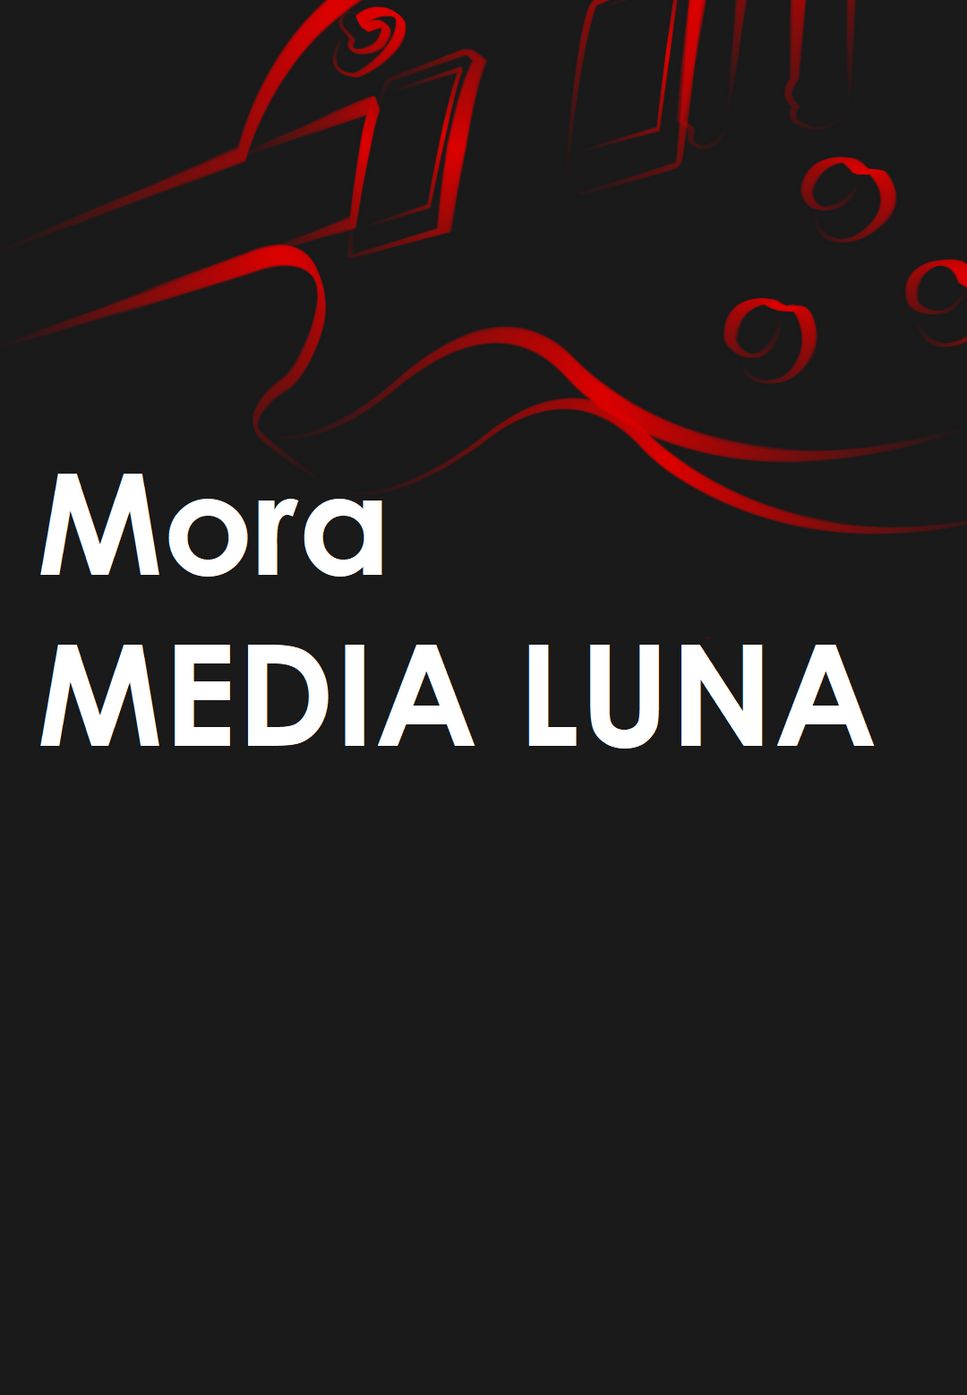 Mora - MEDIA LUNA by Mario Serrato